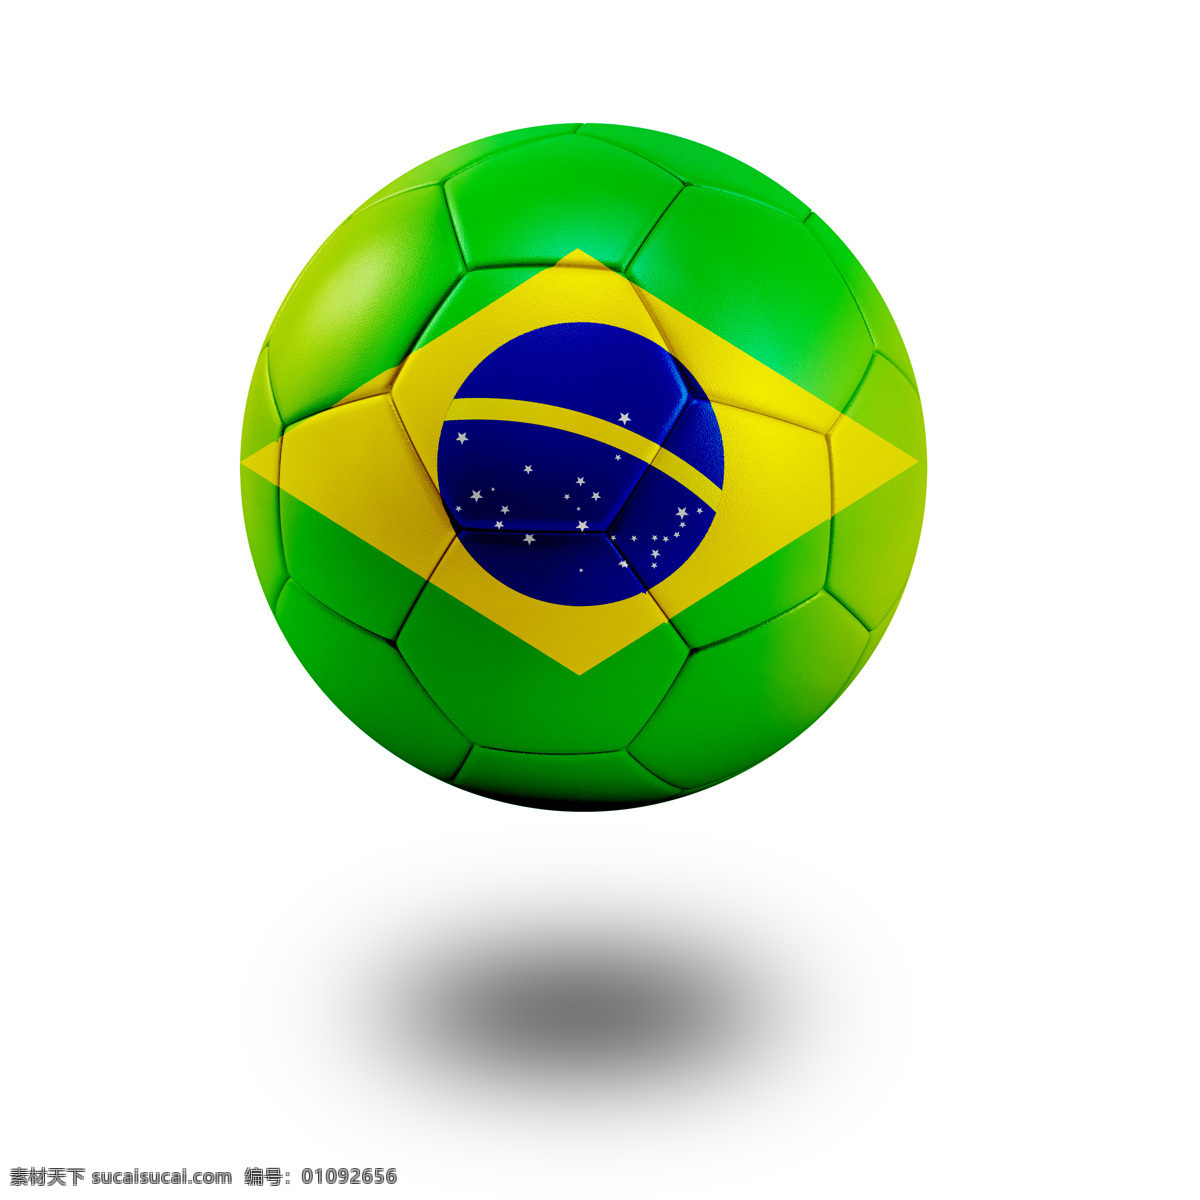 印 世界杯 标志 足球 巴西 背景 绿 体育运动 生活百科 白色